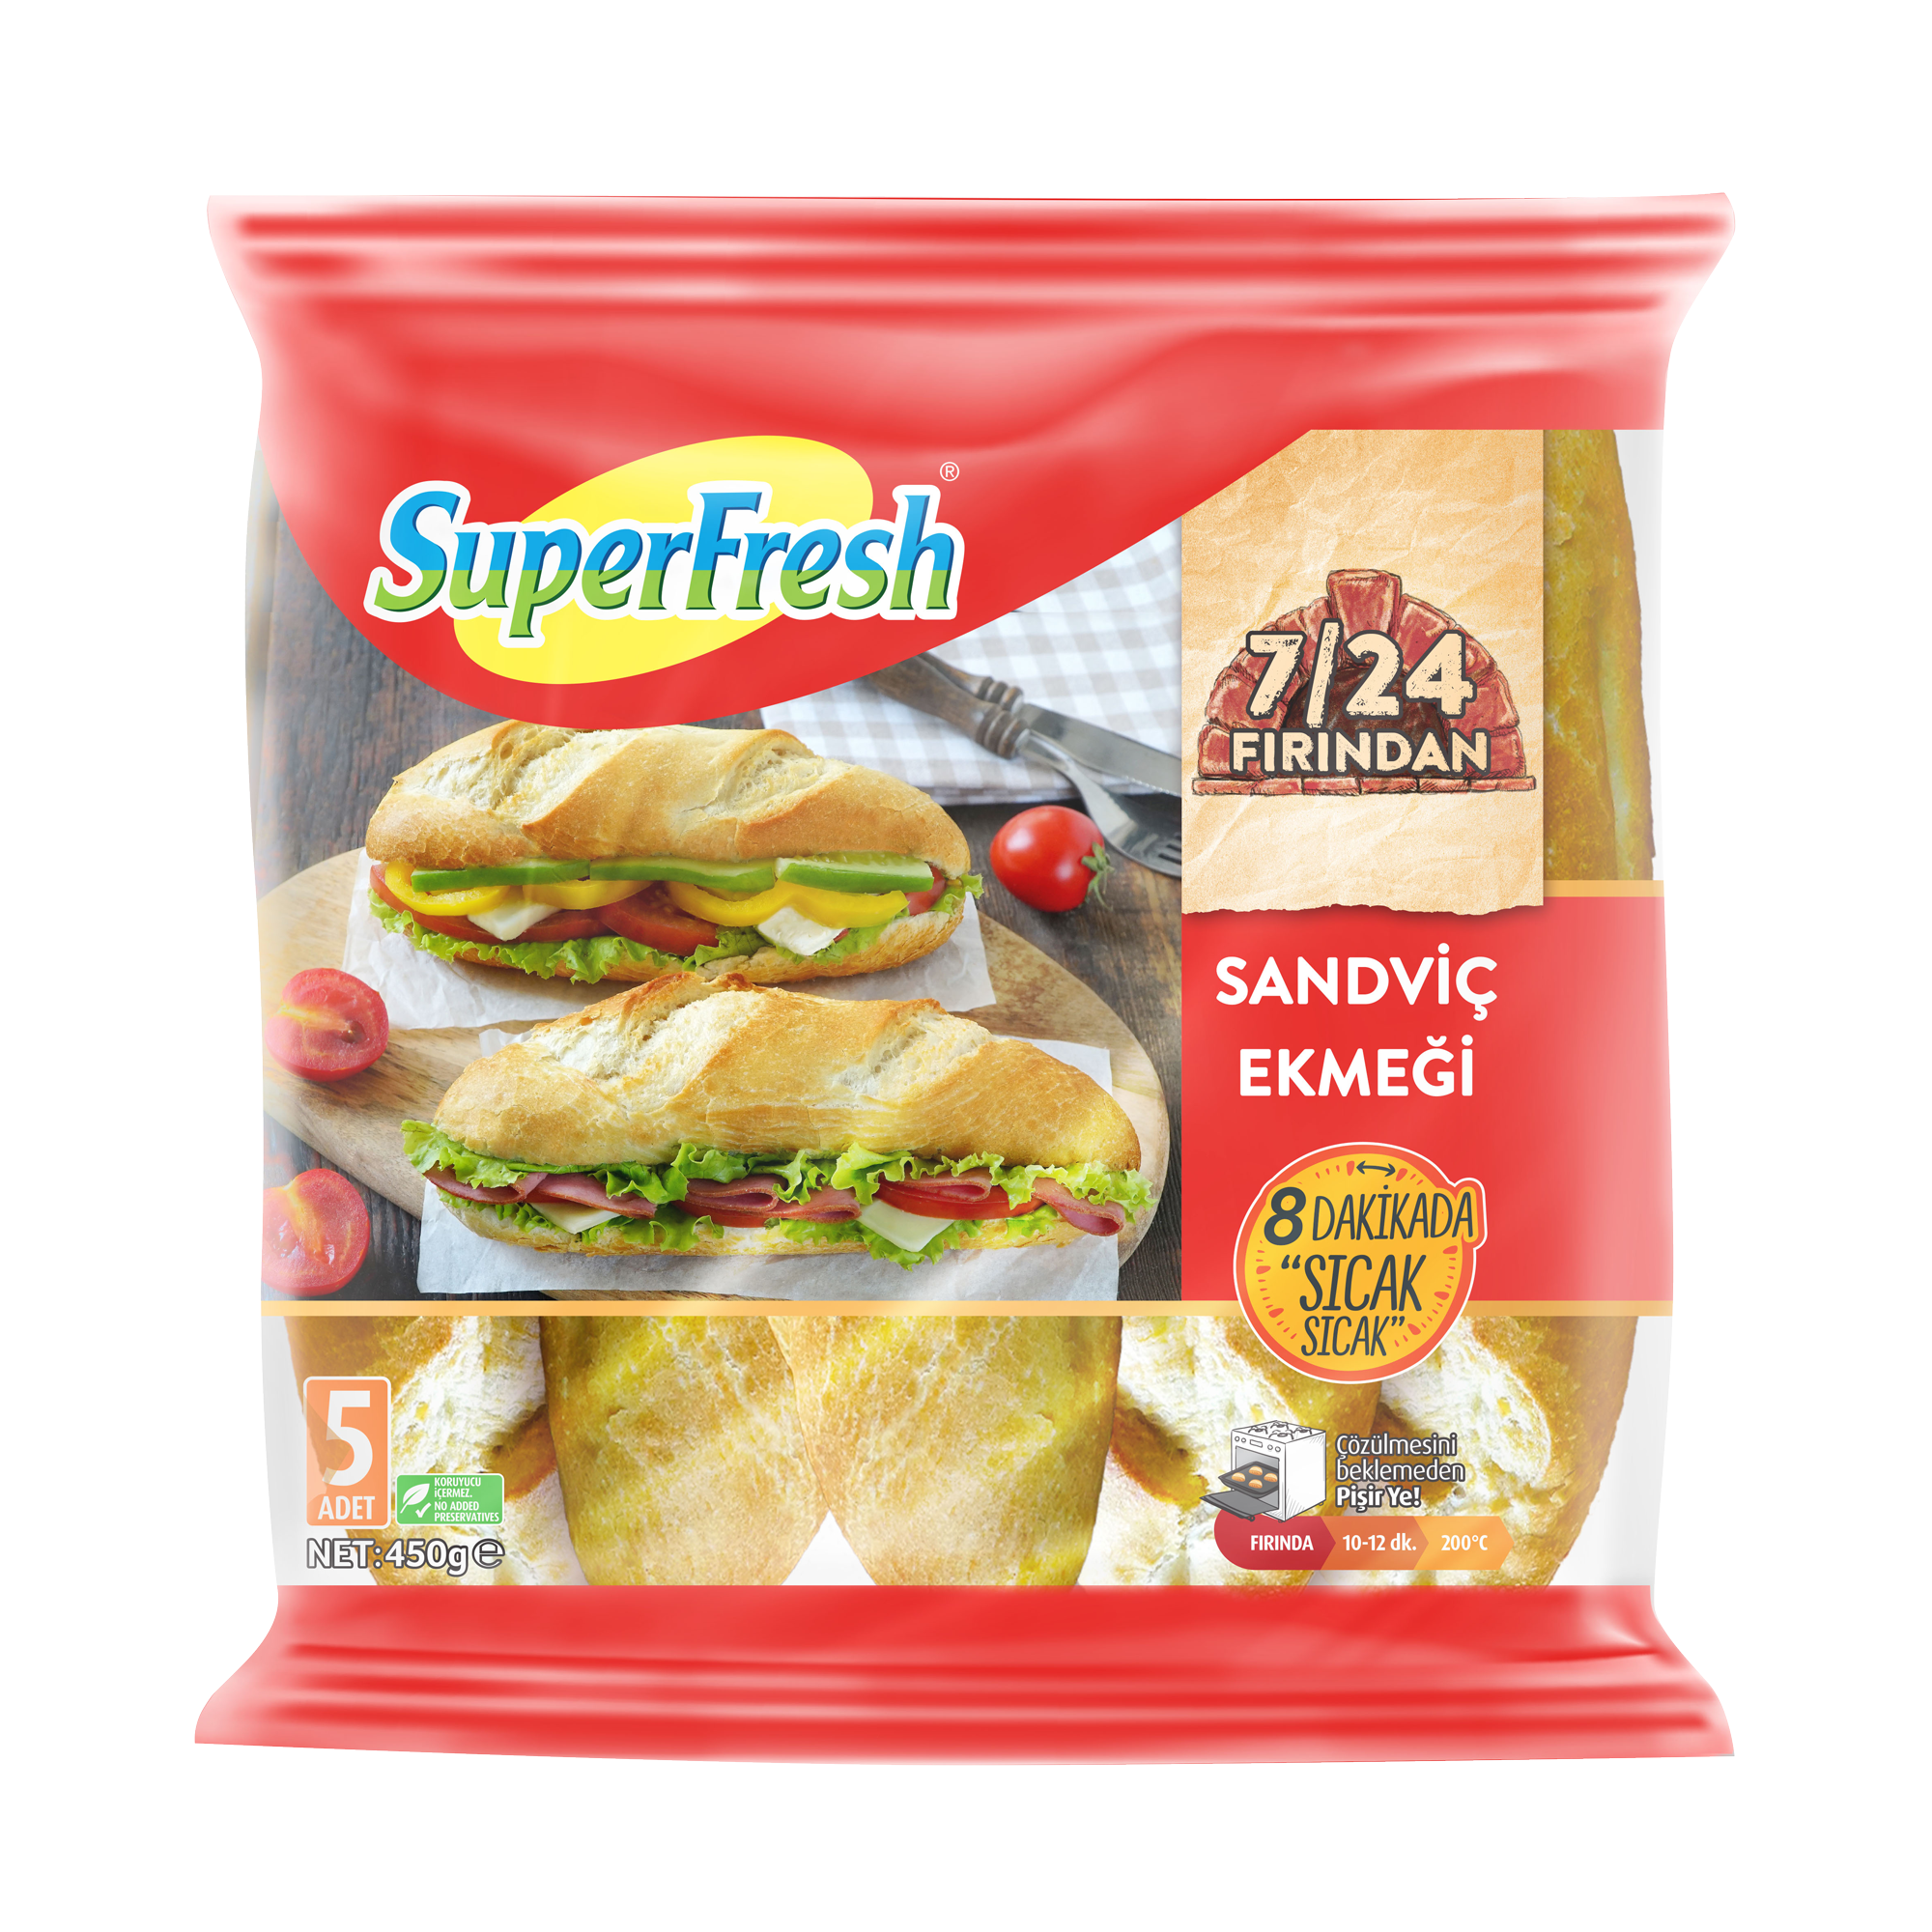 SuperFresh 7/24 Fırından Sandviç Ekmeği